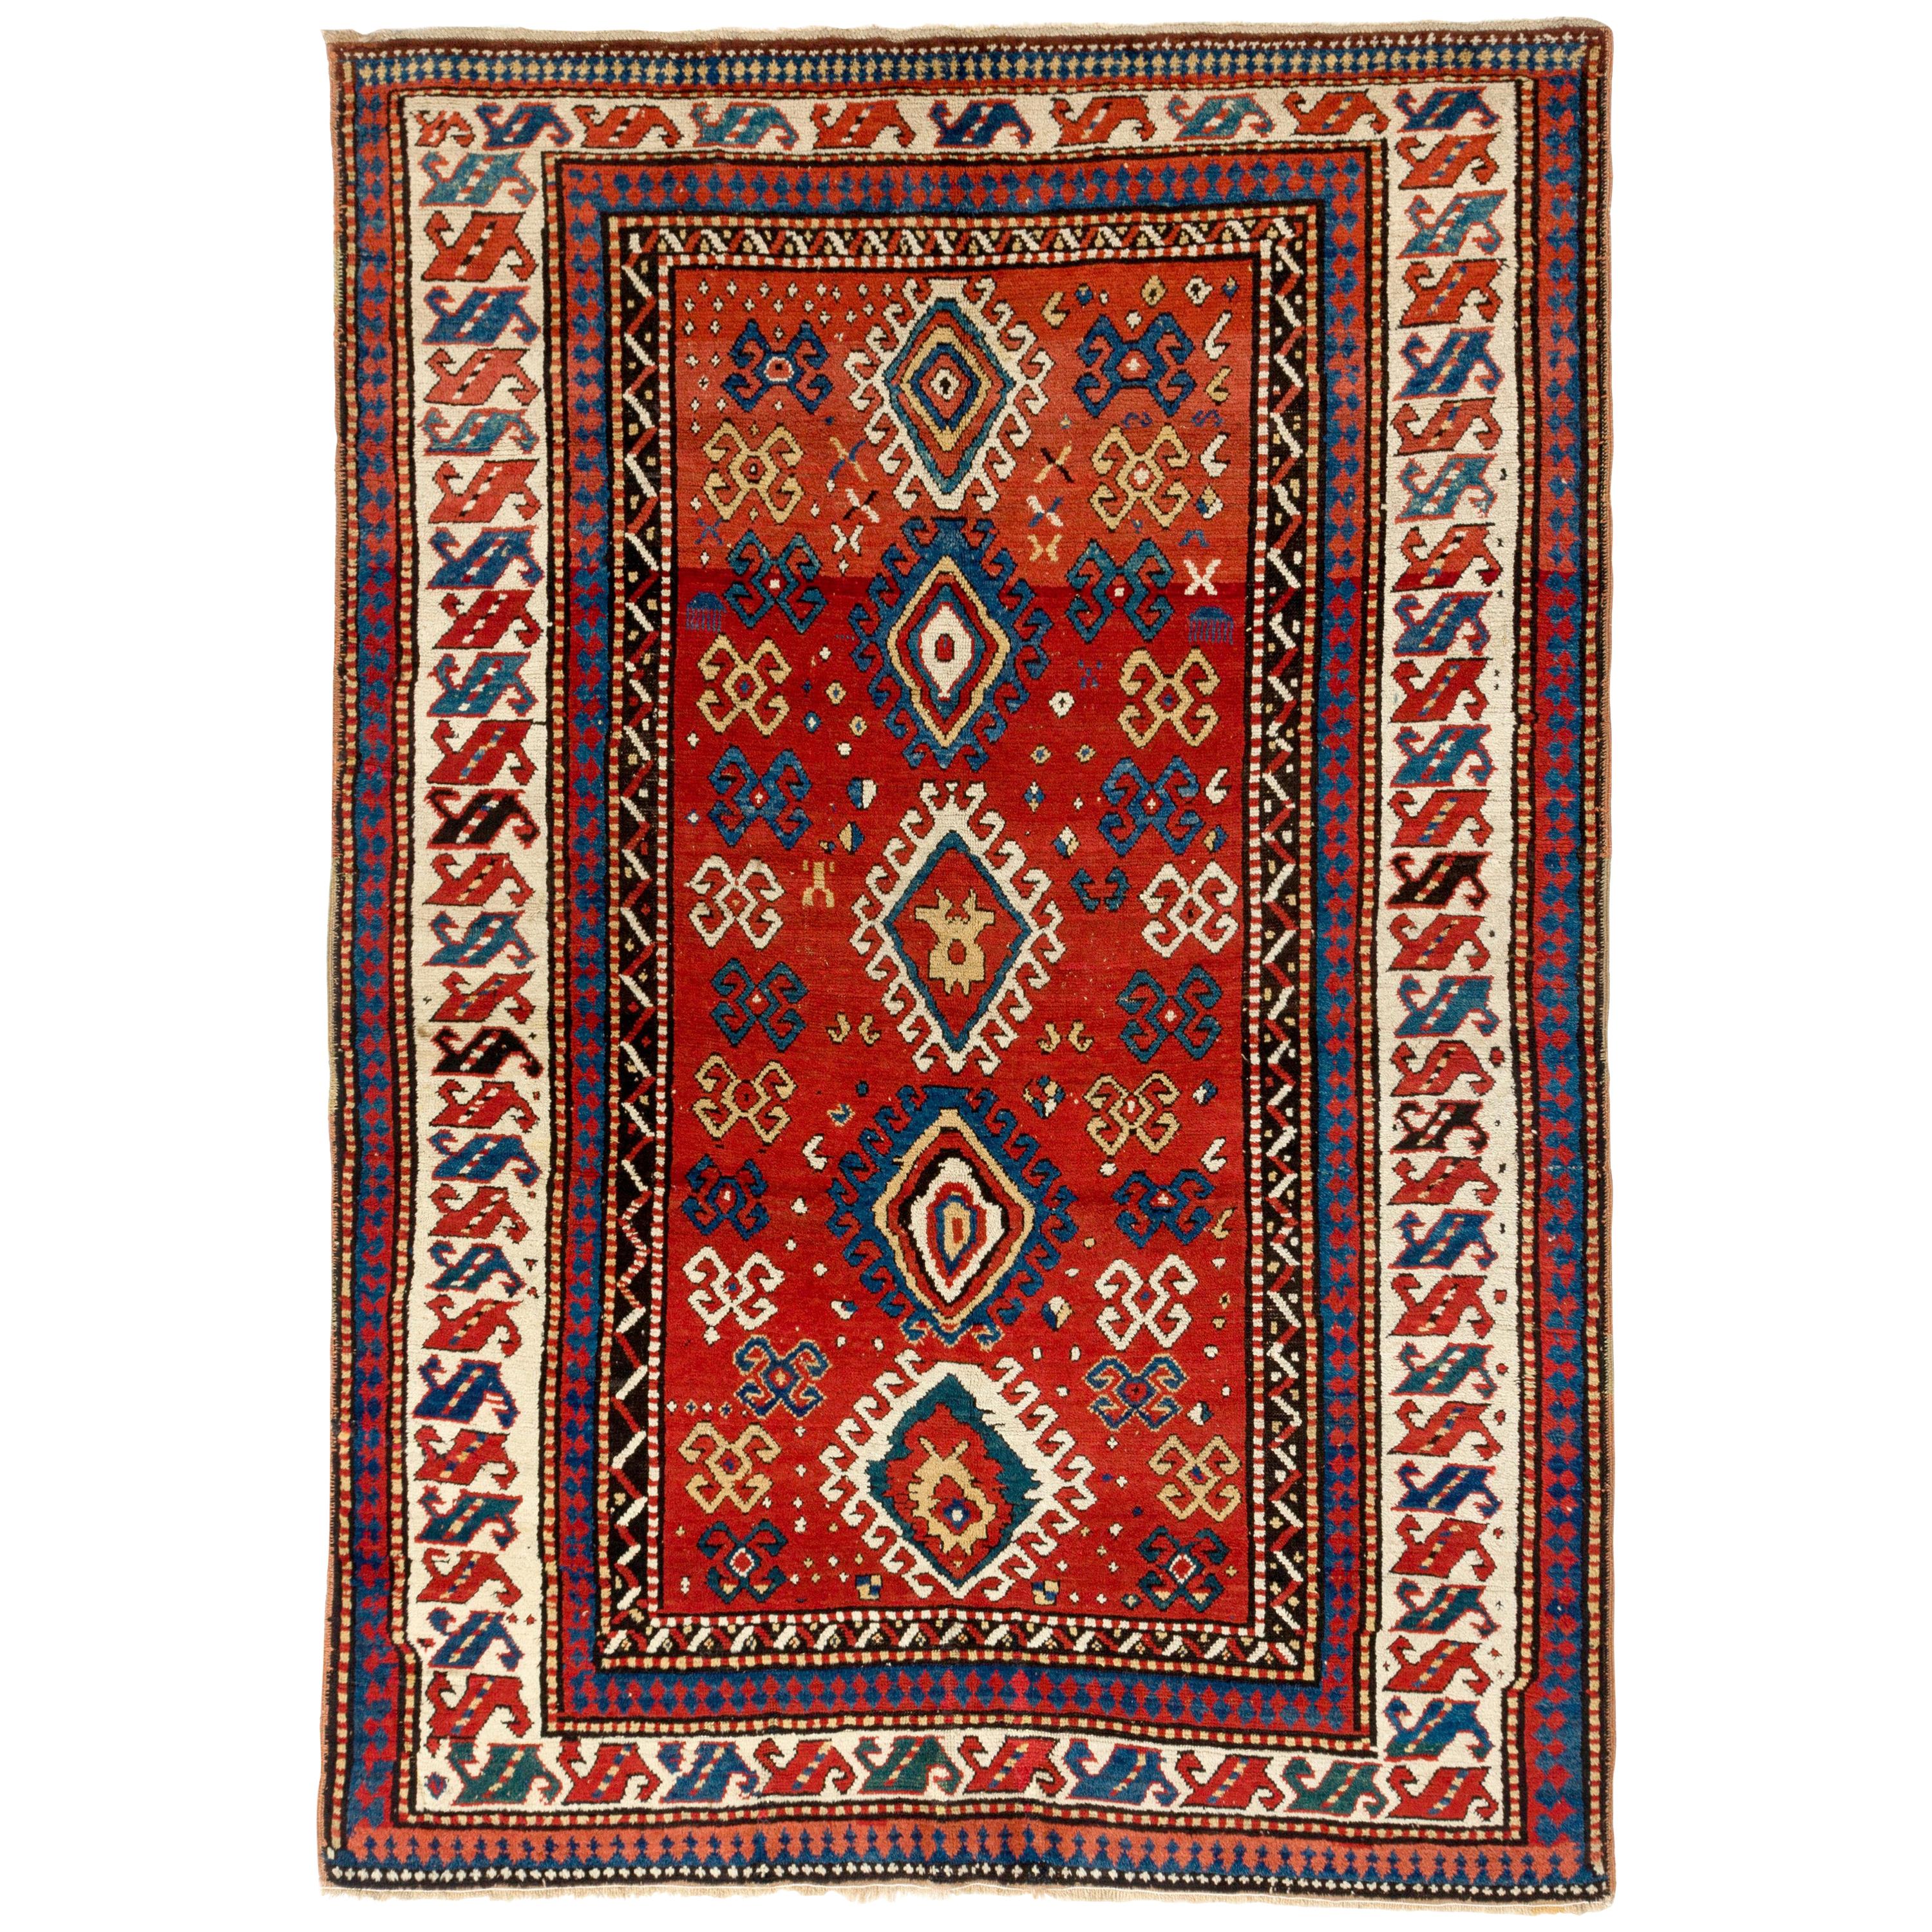 5.6x8 Ft Antique Caucasian Kazak Rug, Ca 1850. Natural Dyes. Excellent Condition For Sale